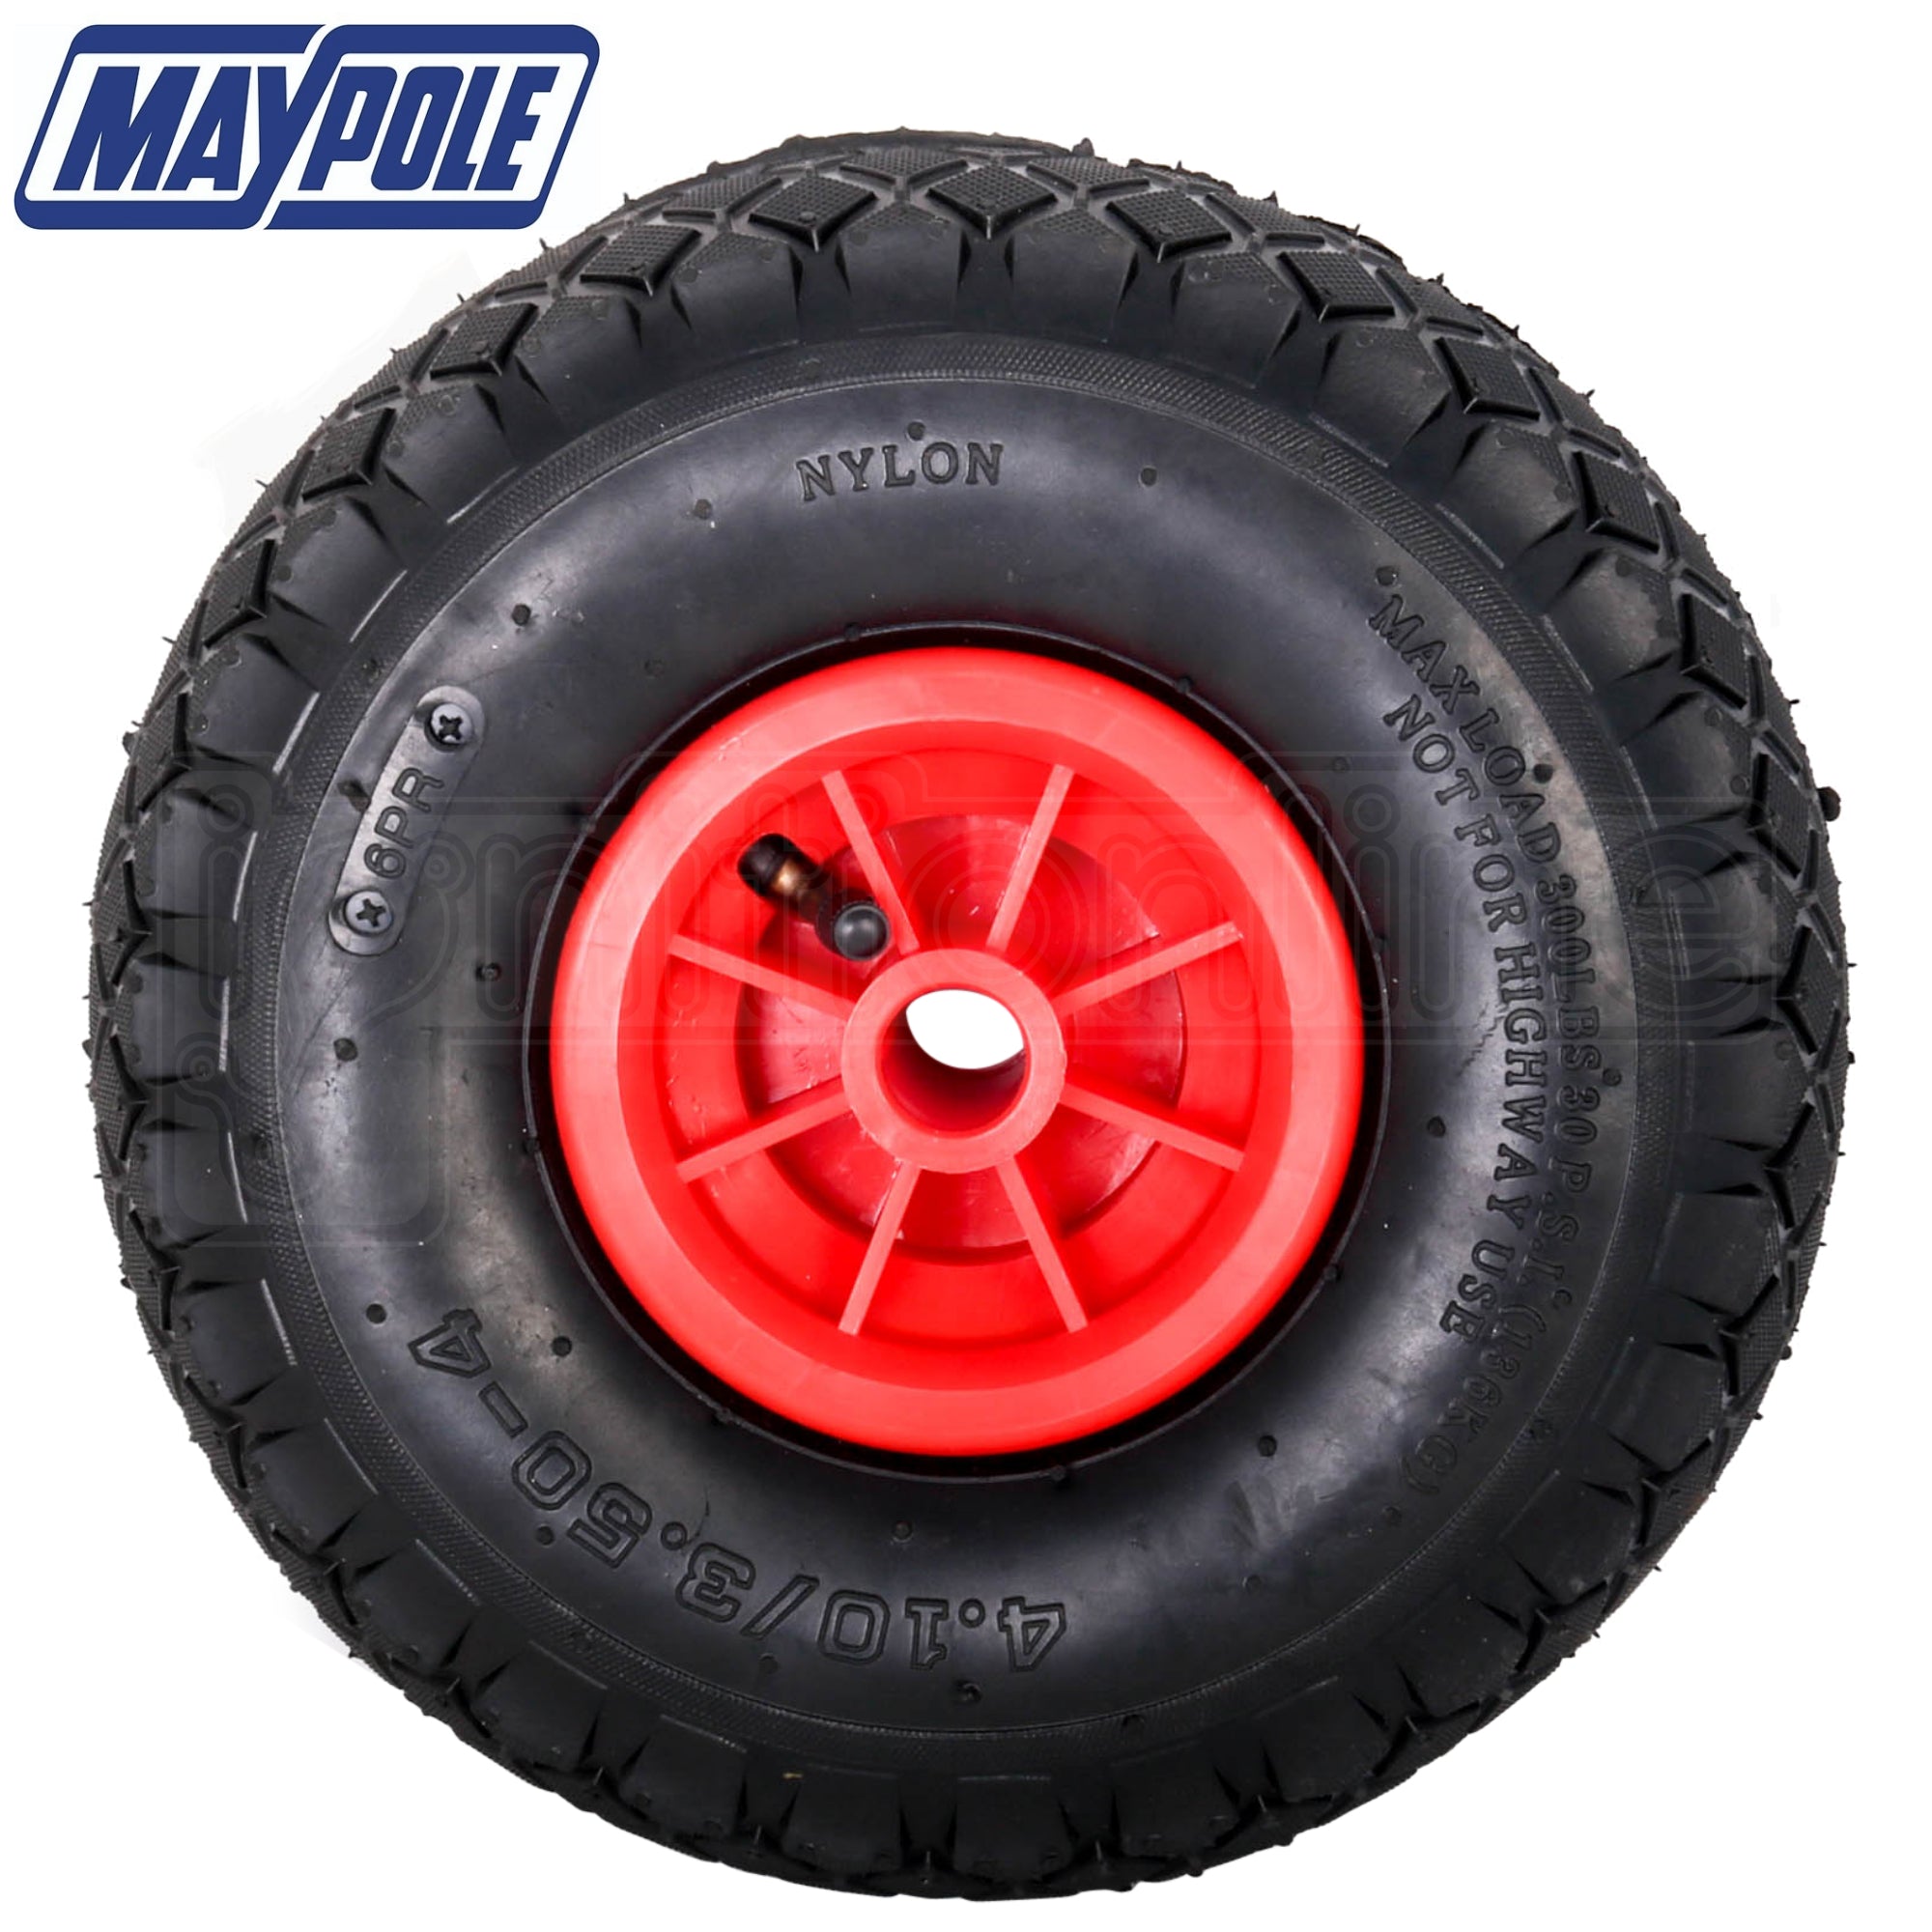 Maypole 260Mm Pneumatic Wheel & Tyre